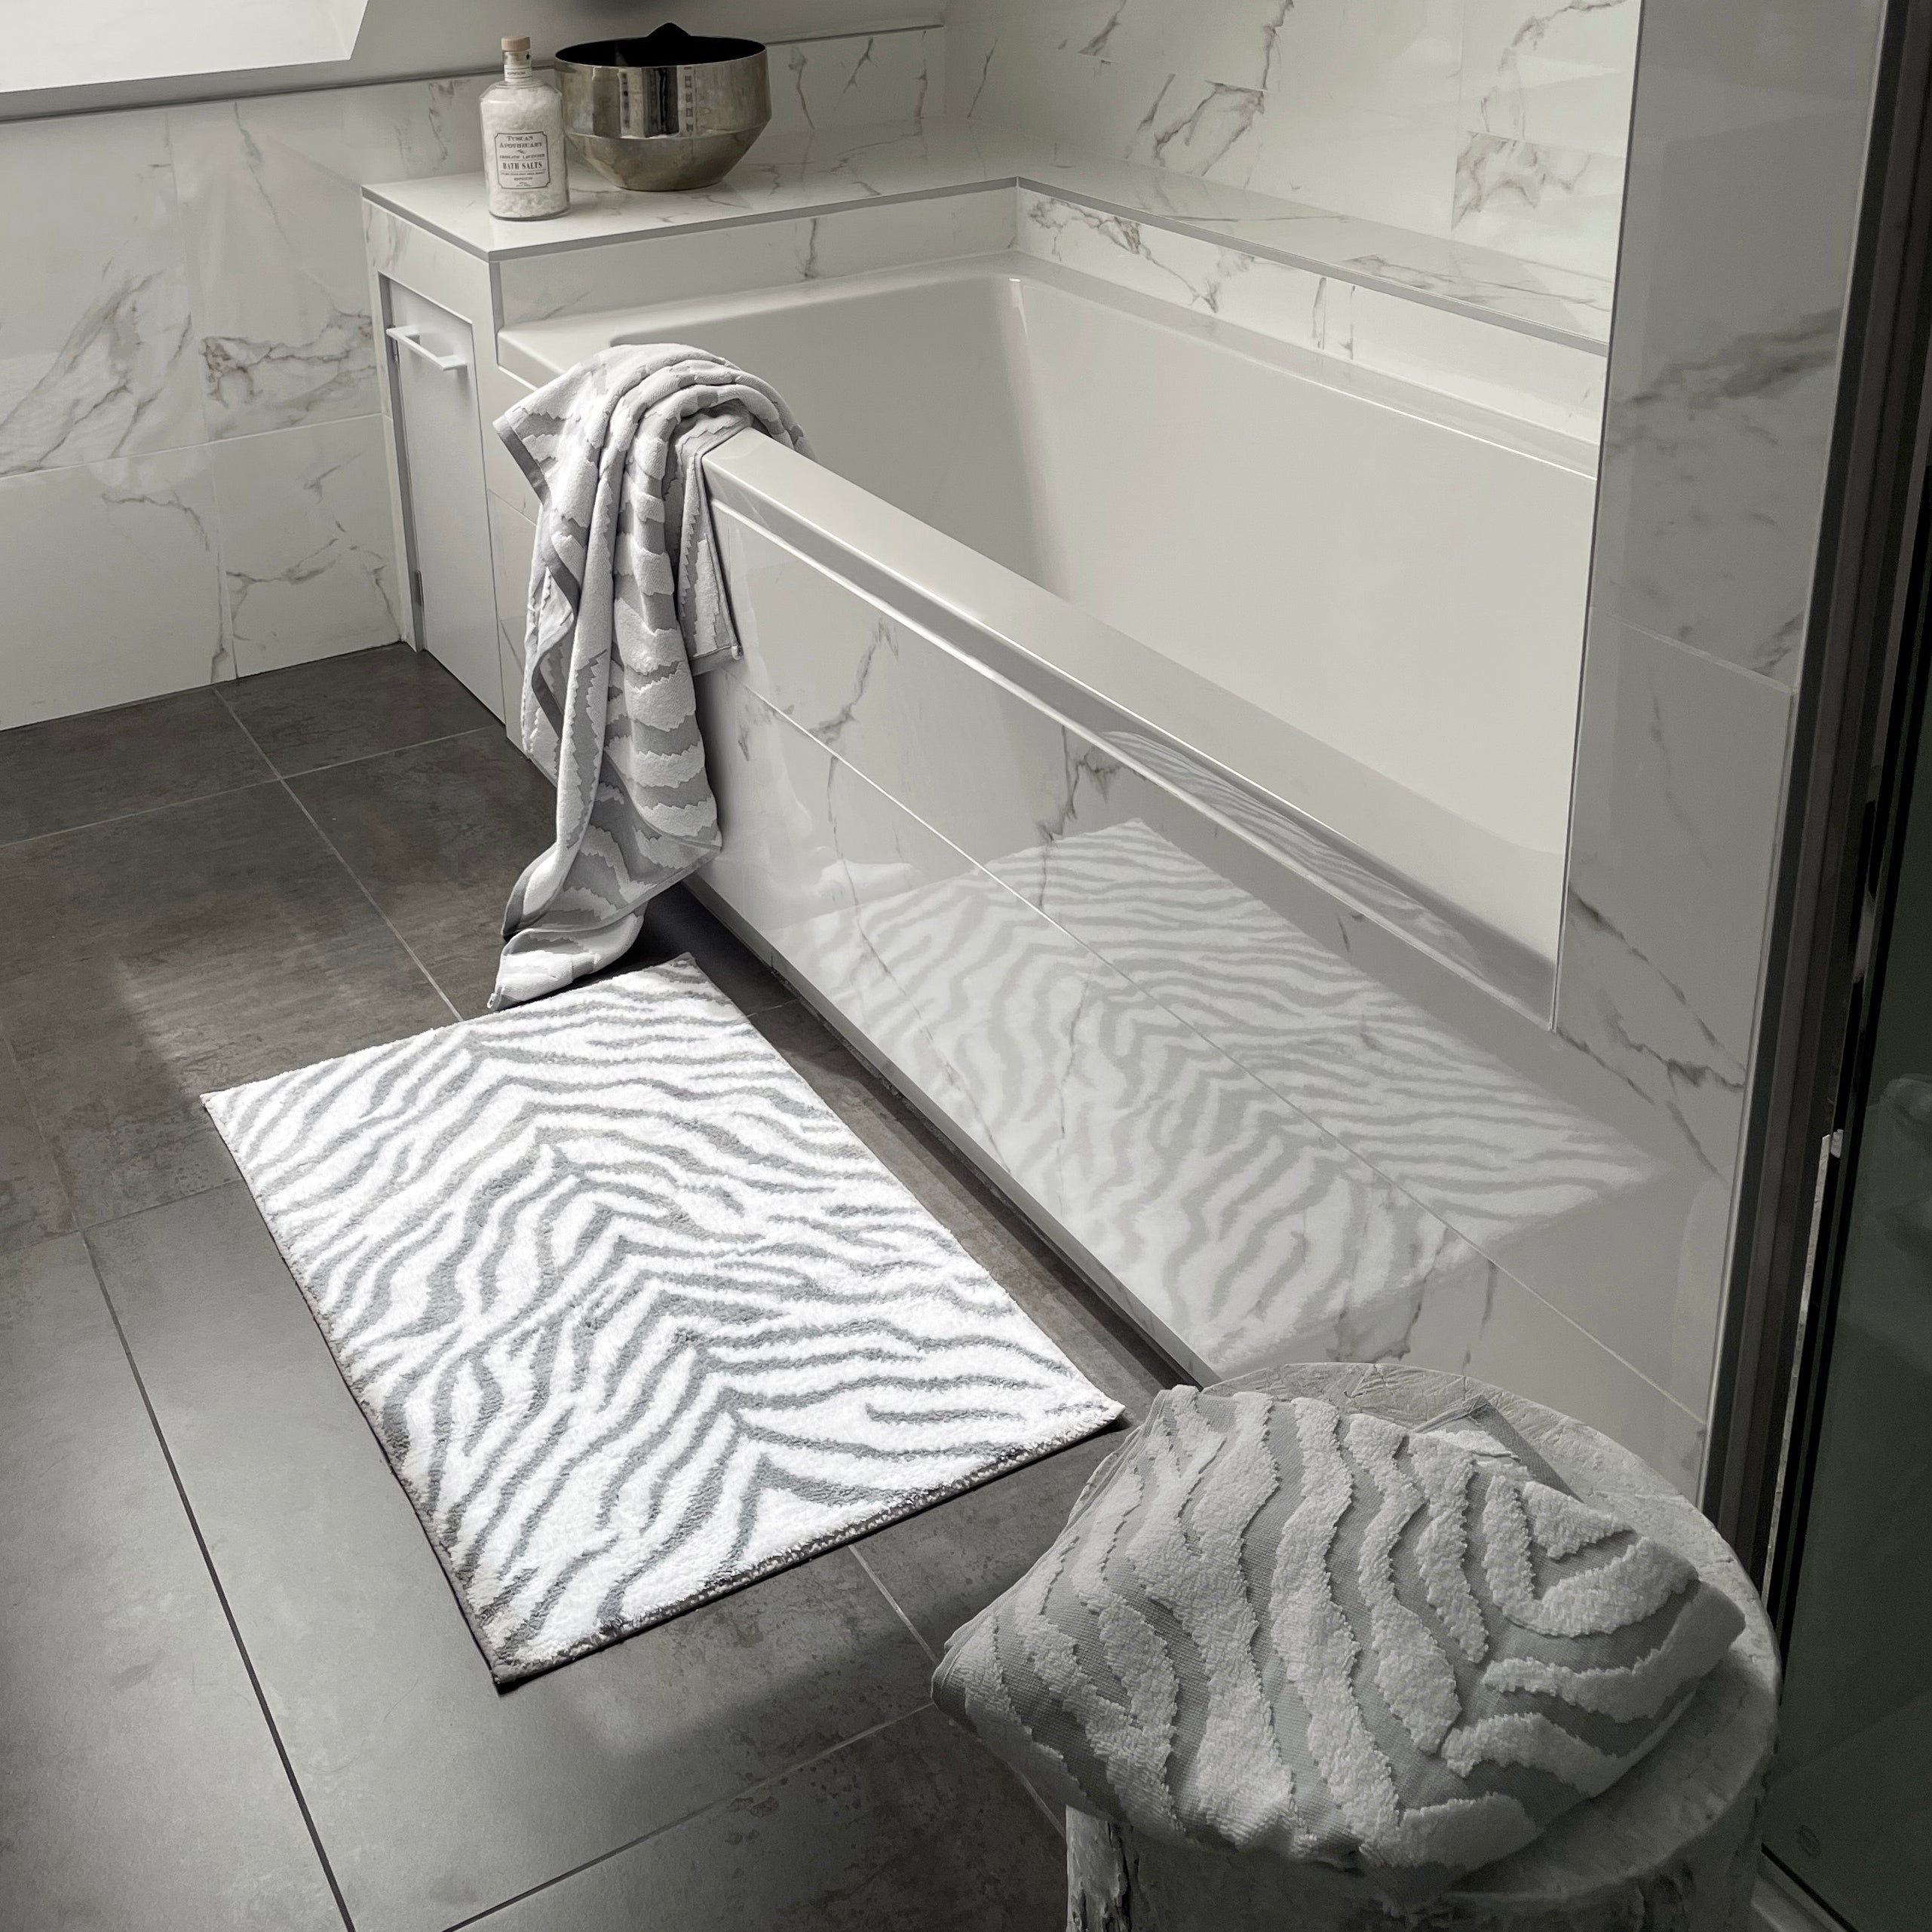 Zebra print bathroom mat and towels